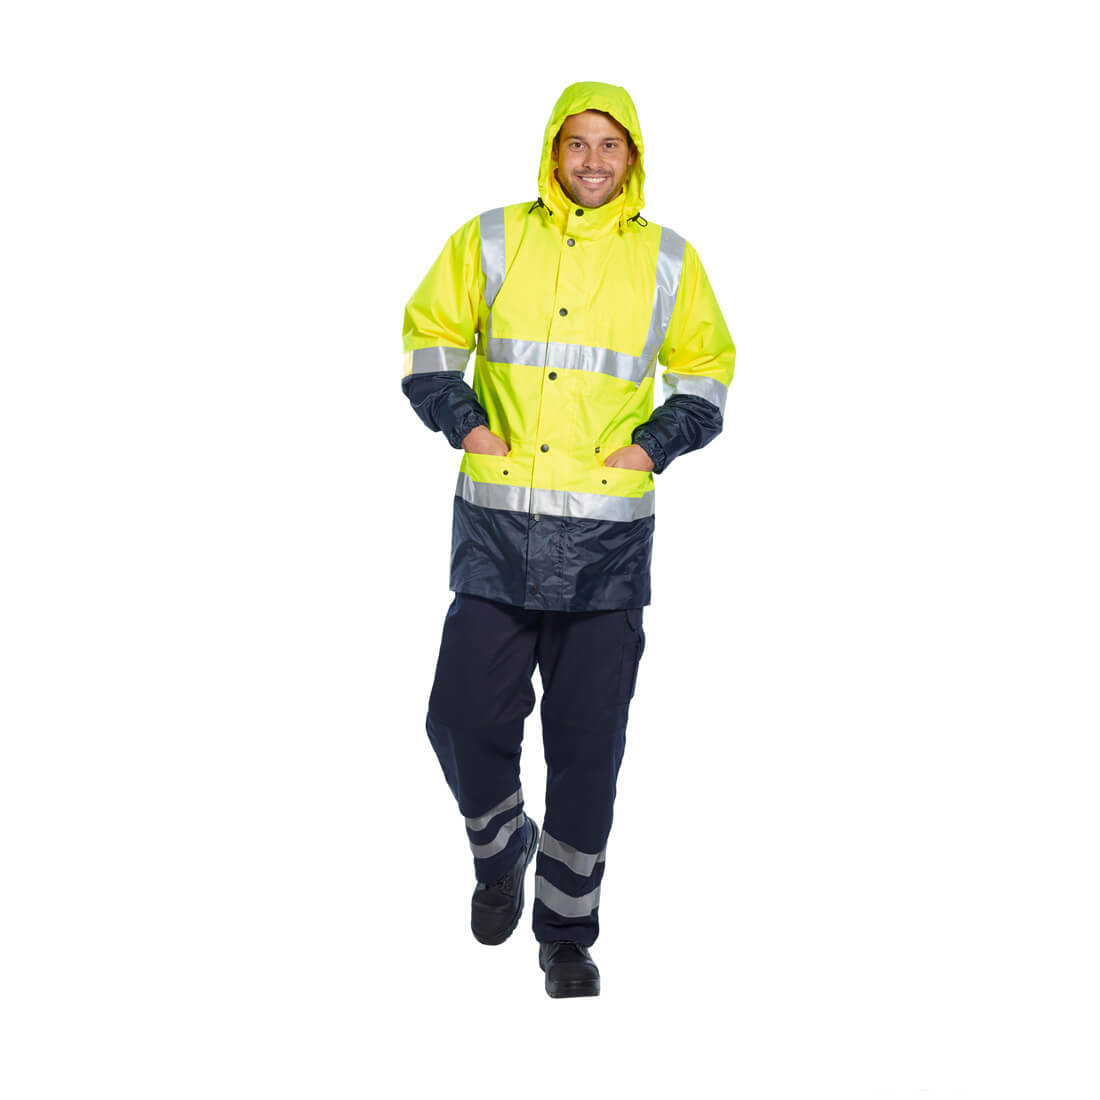 Pantalones de seguridad Iona - Ropa de protección